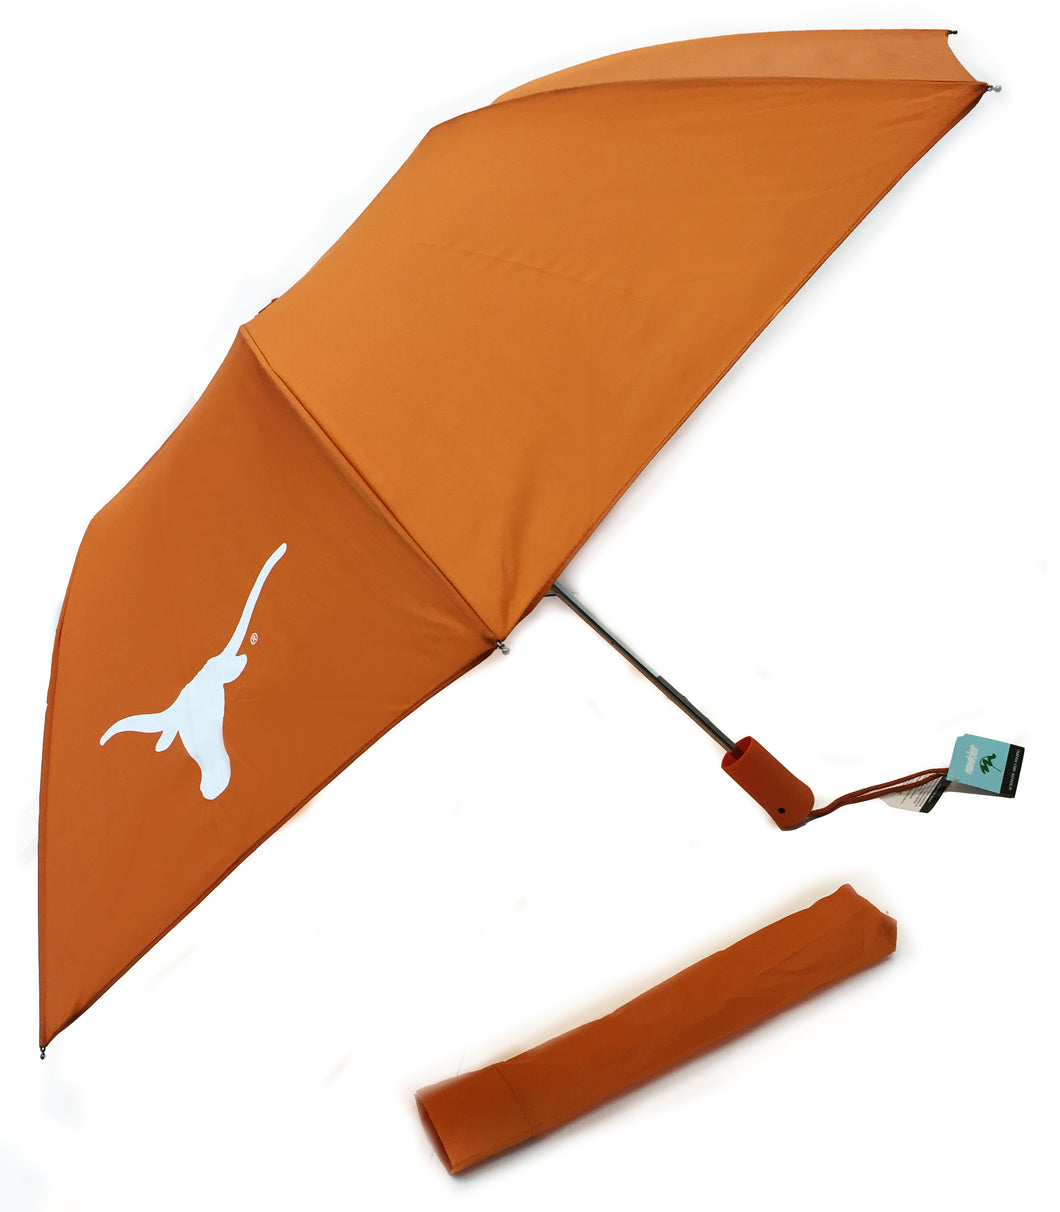 Burnt Orange Umbrella with Longhorn